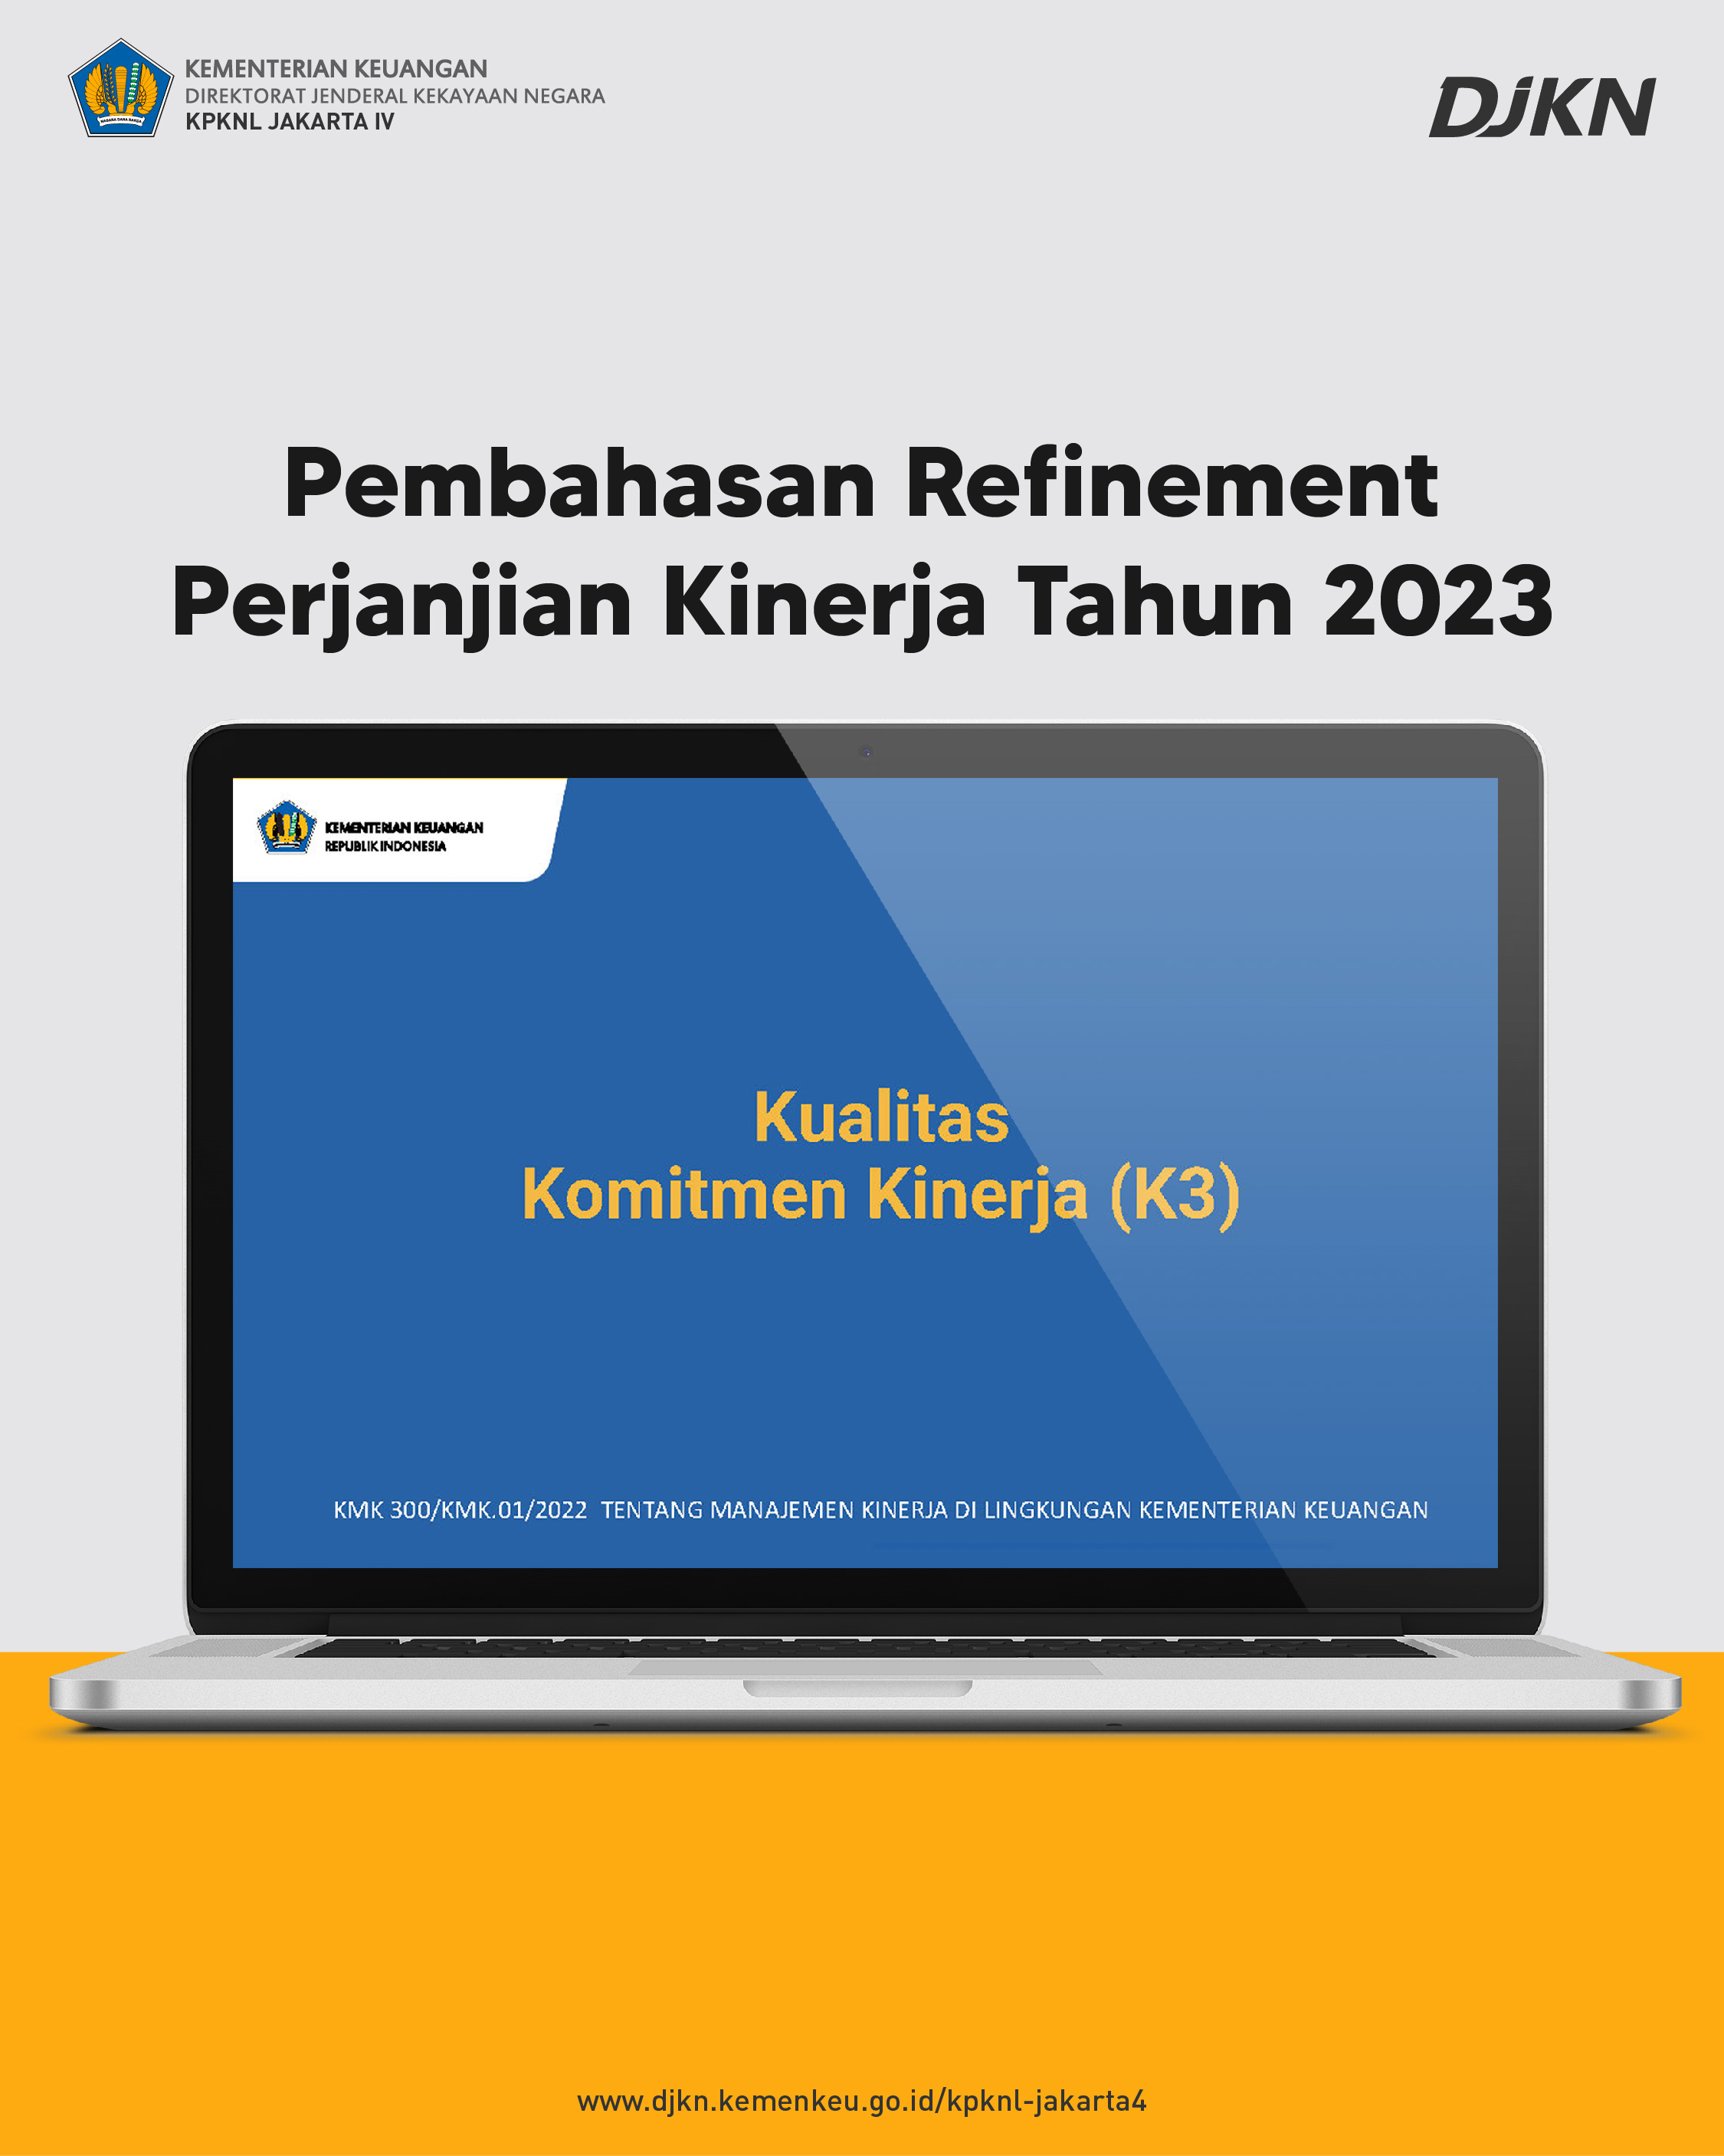 Pembahasan Refinement Perjanjian Kinerja, Kualitas Komitmen Kinerja dan Penyusunan Profil Risiko tahun 2023